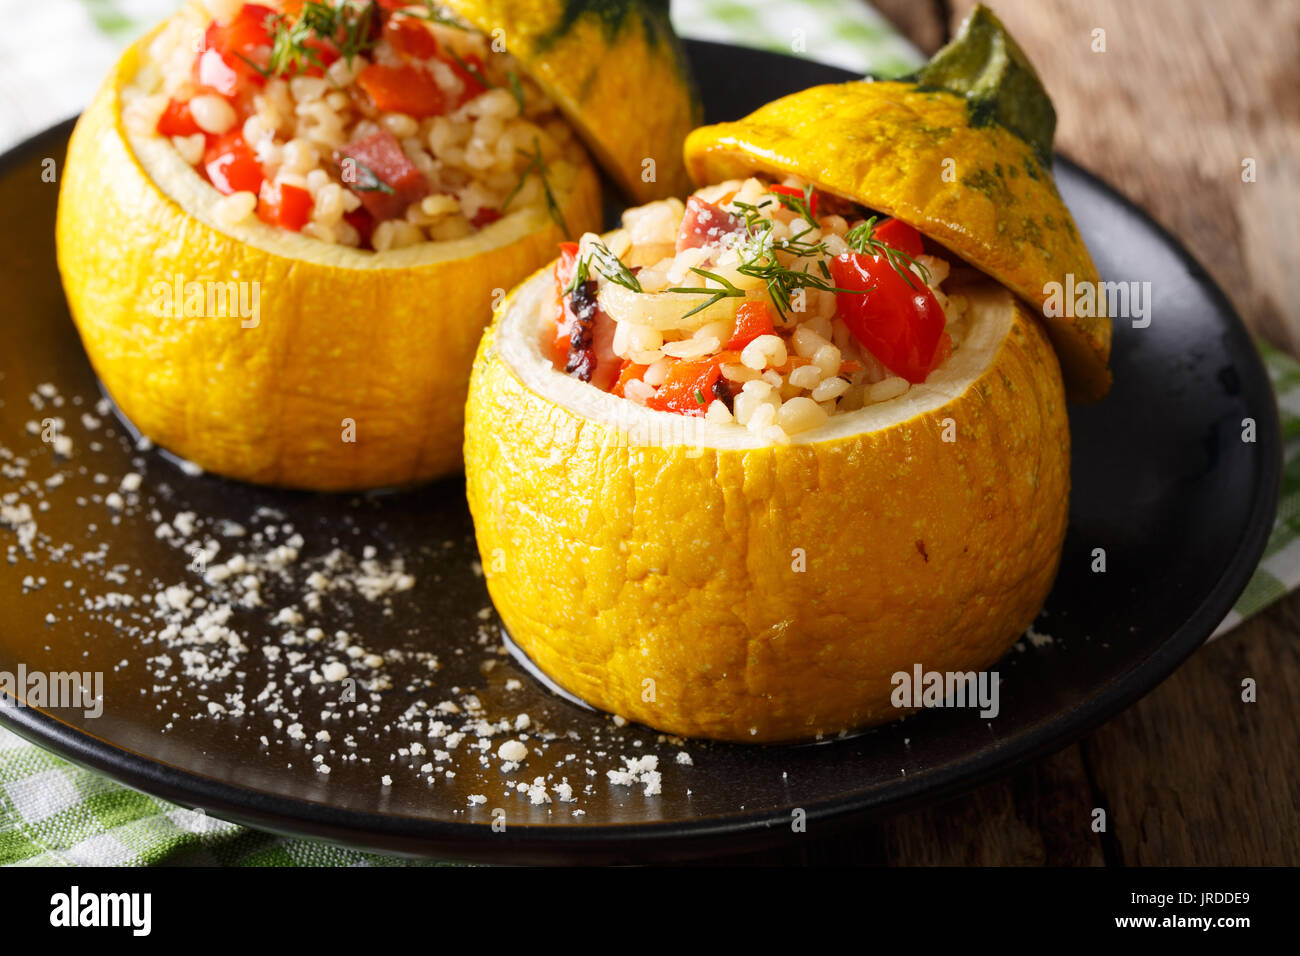 Gelbe Zucchini gefüllt mit Bulgur, Fleisch und Gemüse close-up auf einem Teller. Horizontale Stockfoto